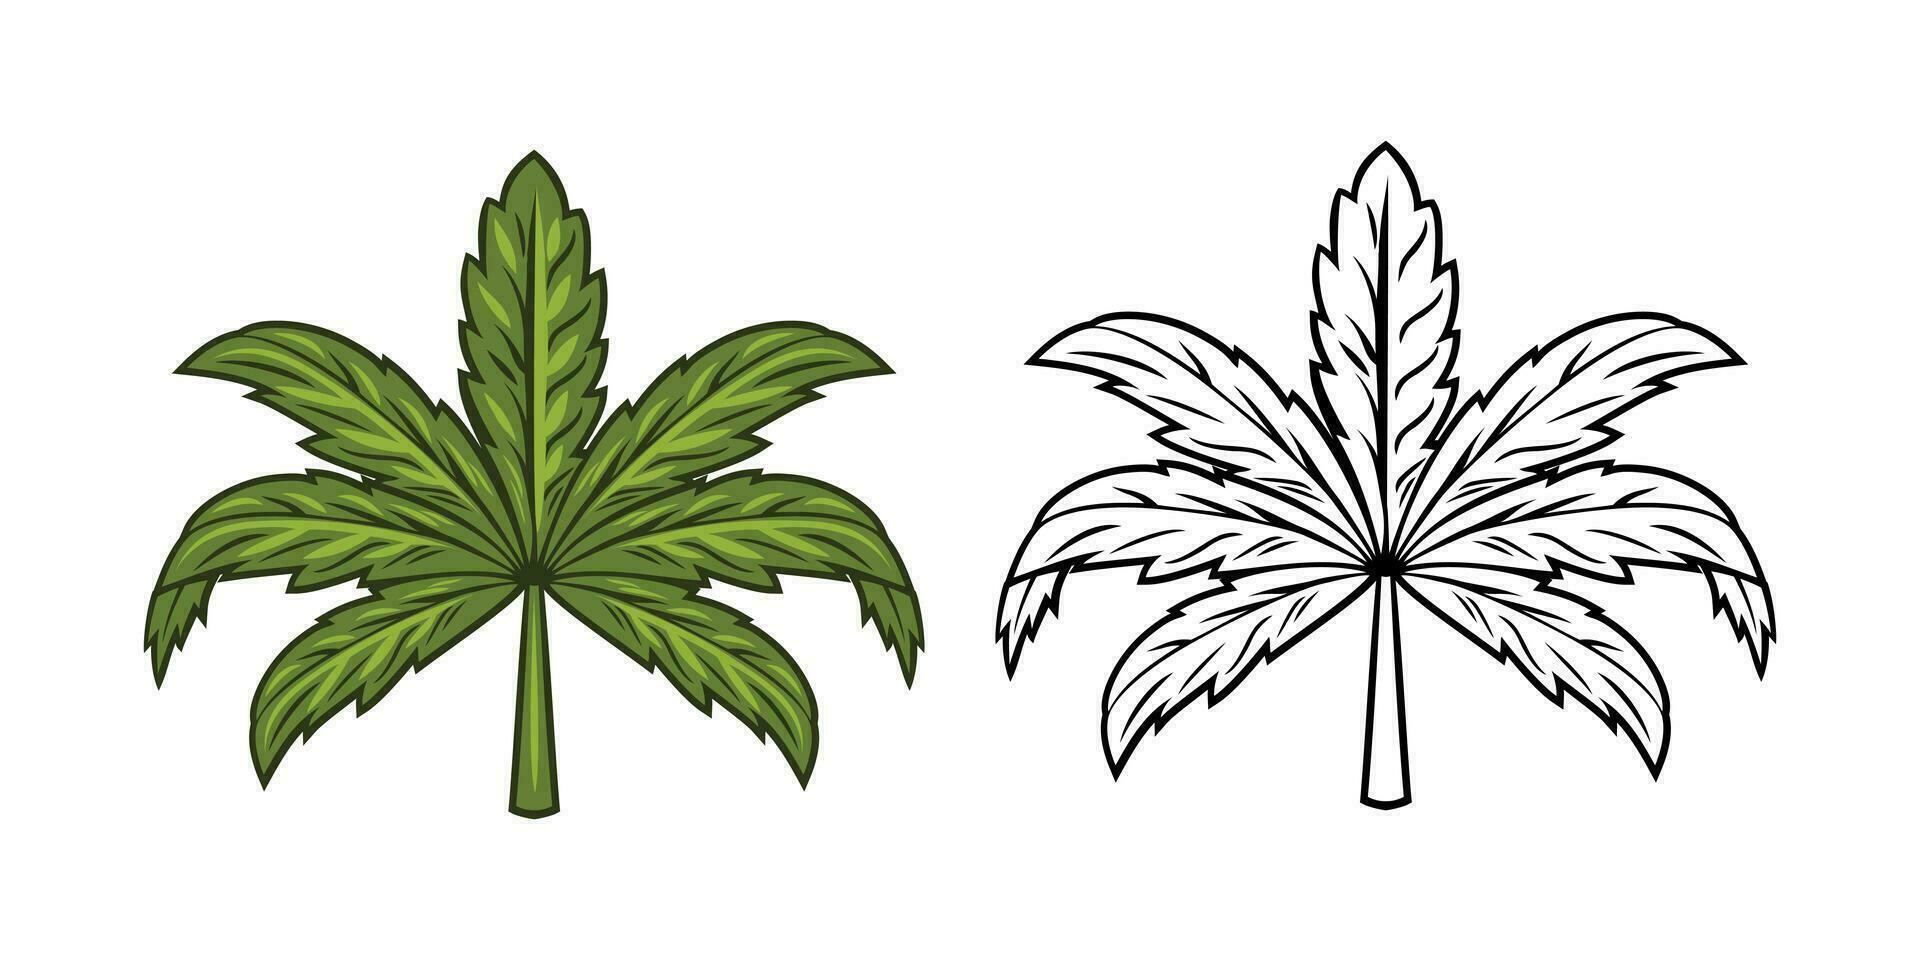 Marijuana Leaf Illustration vector